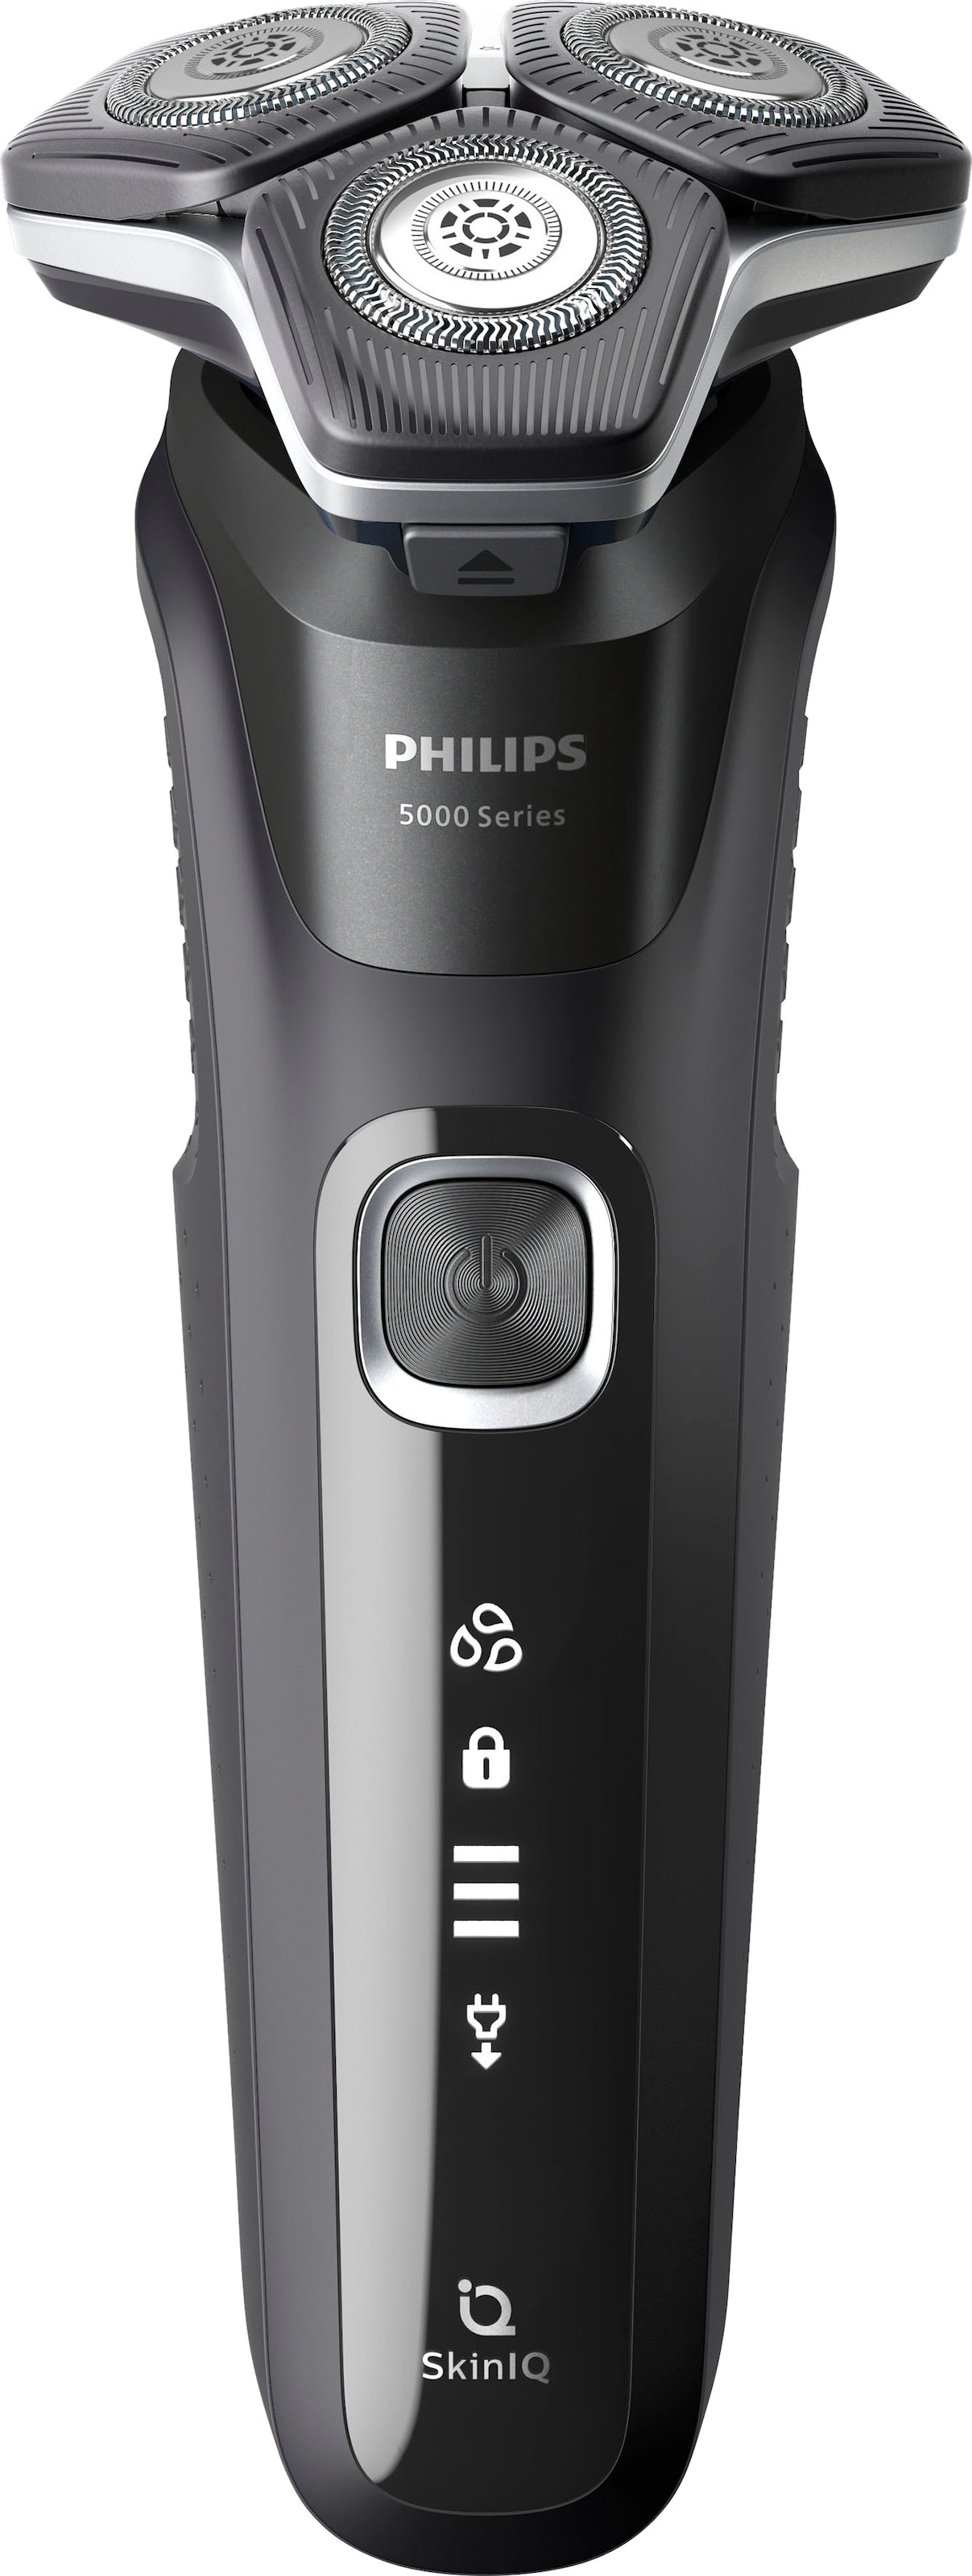 Philips Technologie ausklappbarer Präzisionstrimmer, S5898/25«, SkinIQ Elektrorasierer im mit kaufen Ladestand, Series Online-Shop 5000 »Shaver